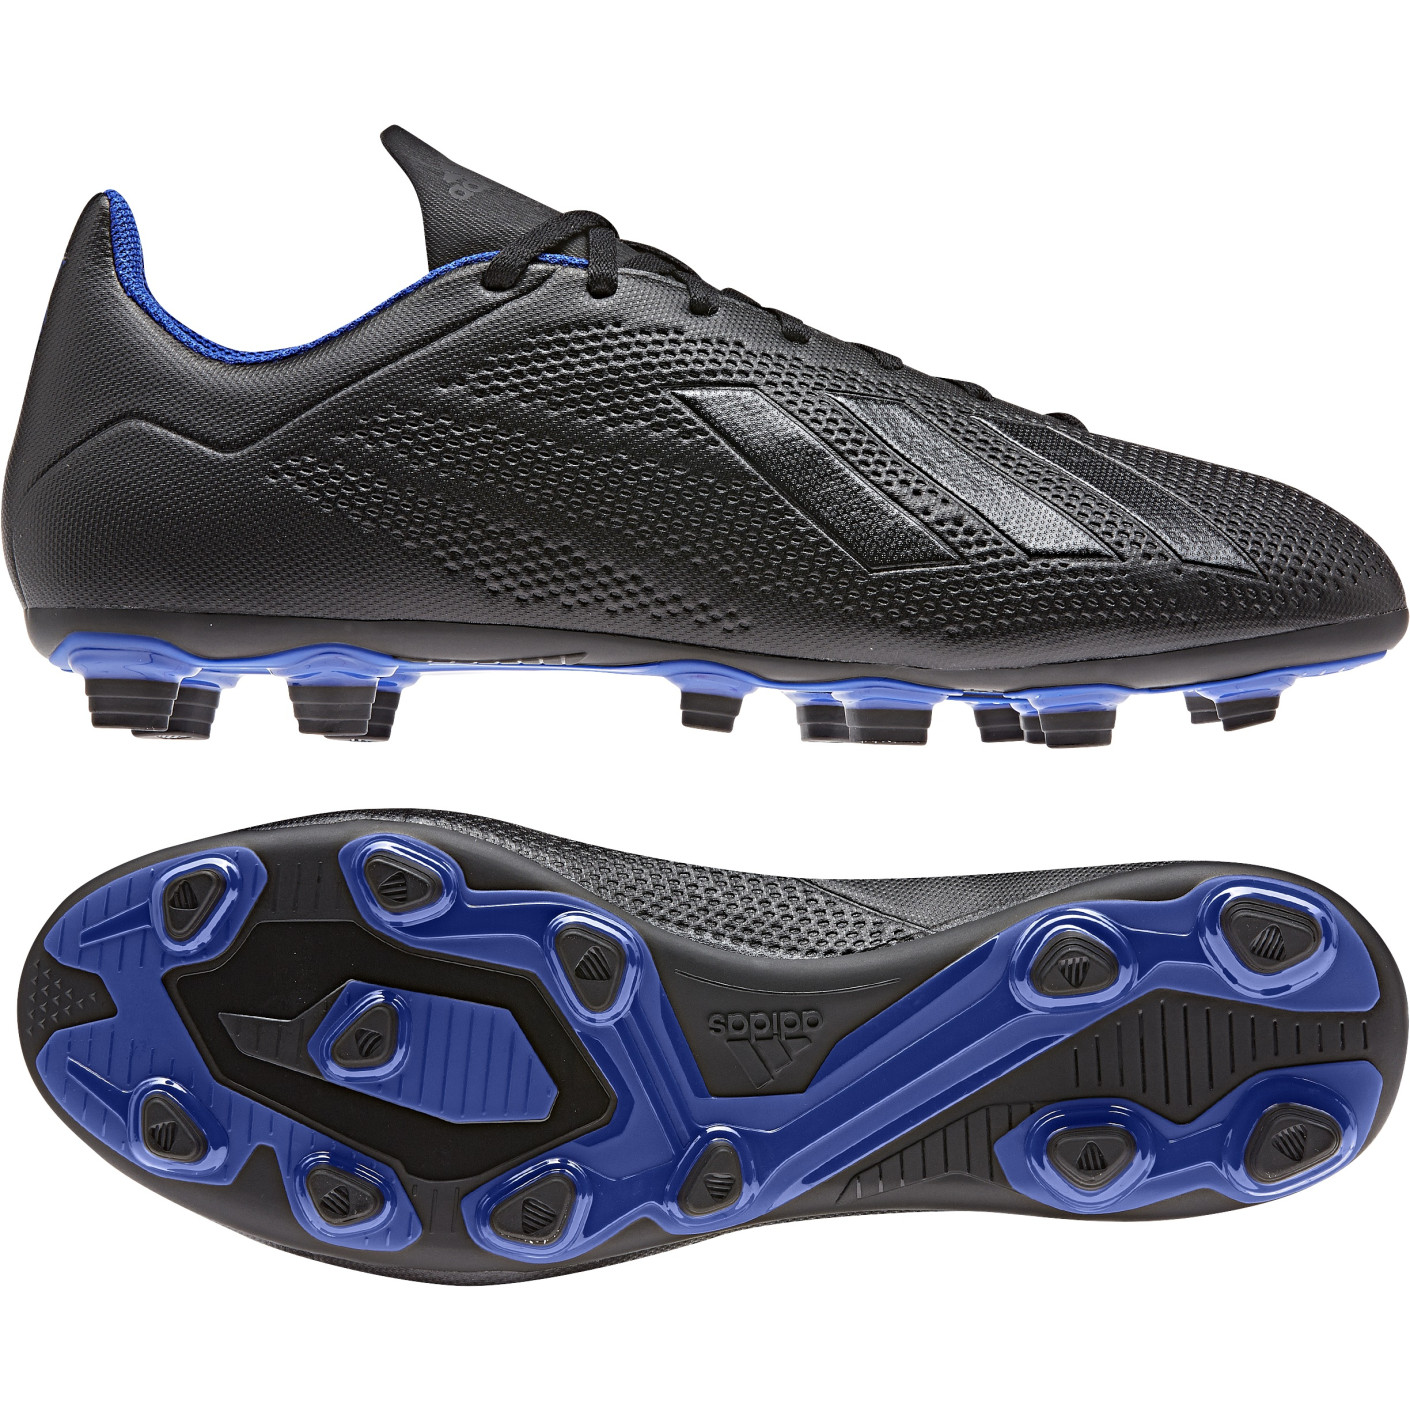 adidas X 18.4 FG Voetbalschoenen Zwart Blauw